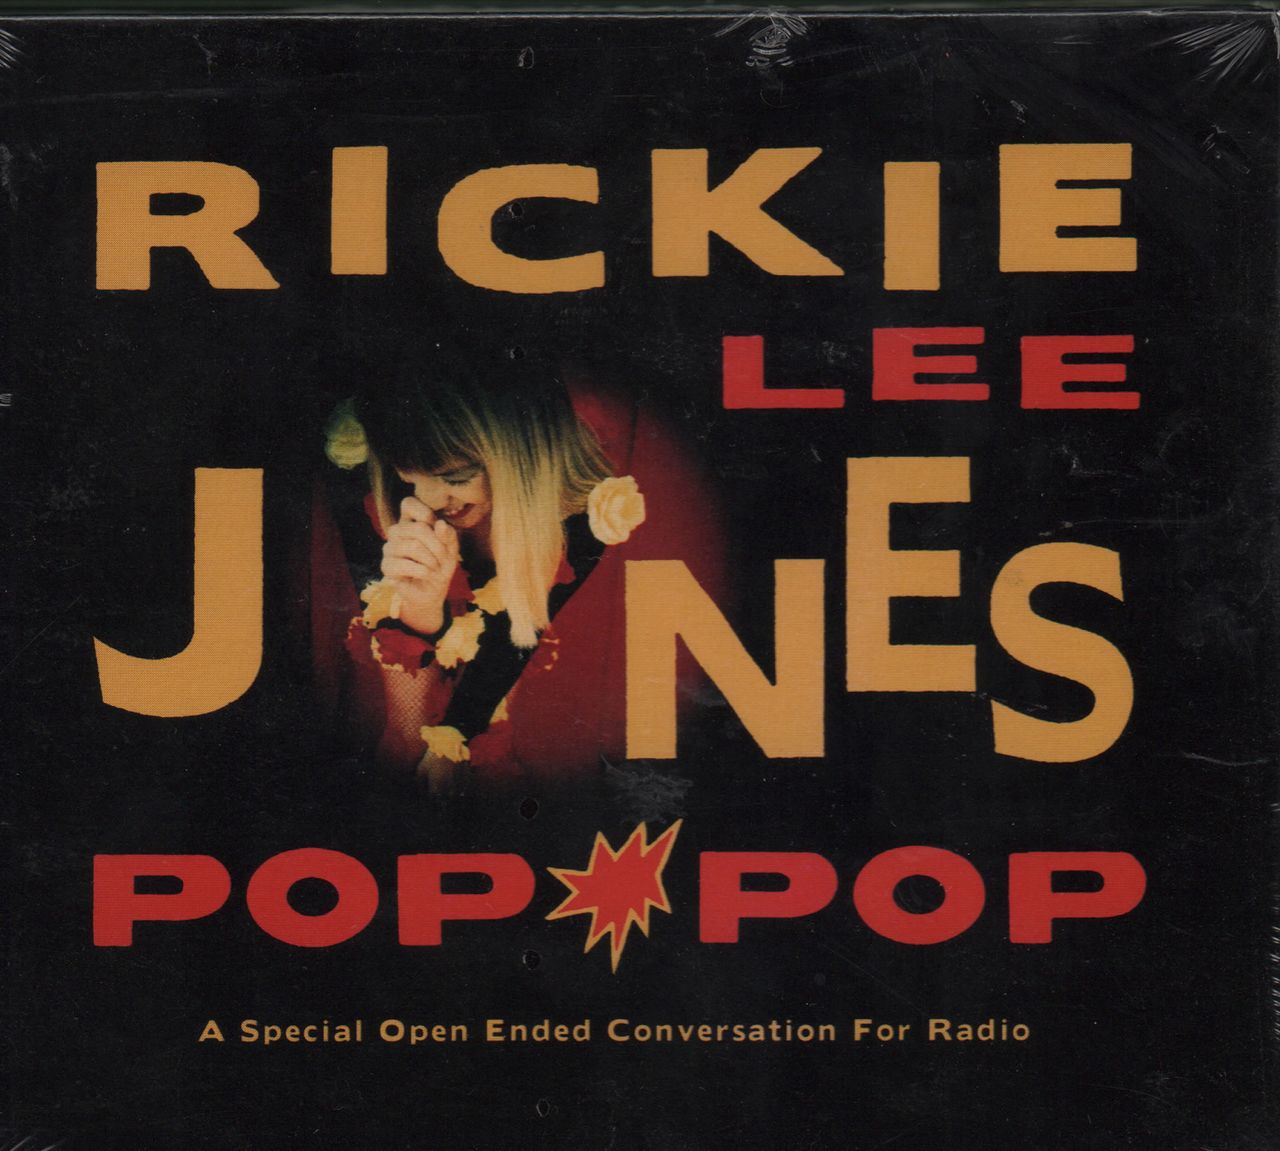 Rickie Jones Pop Pop US Promo CD album — RareVinyl.com